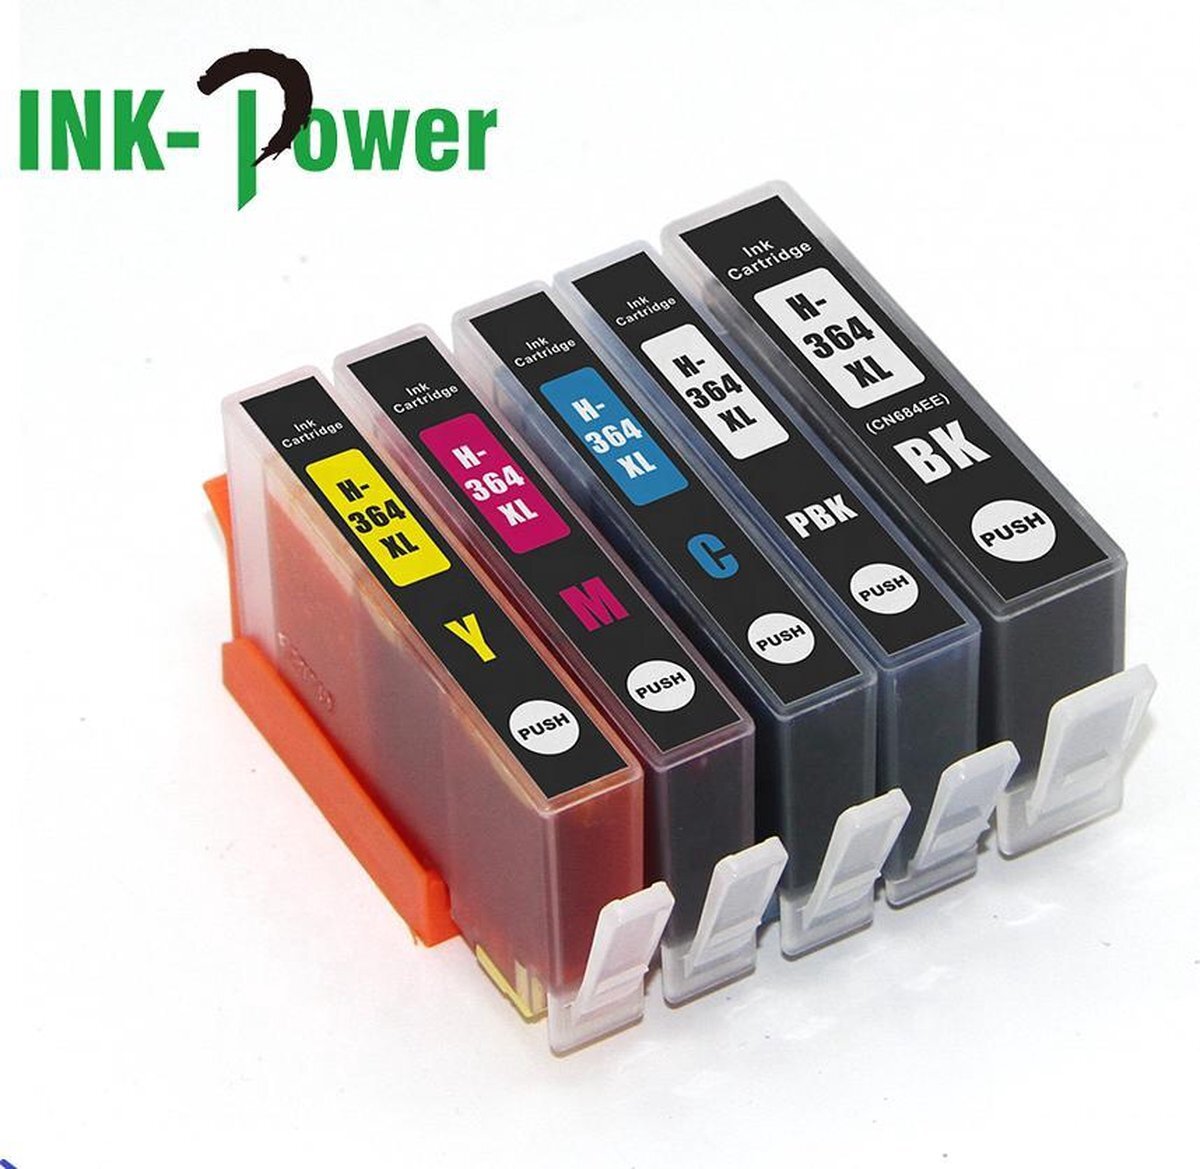 Ink Power Inktcartridge voor HP 364XL | Multipack van 5 stuks voor HP Photosmart 5510 - 5514 - 5515 - 5520 - 5522 - 5524 - 5525 - 6510 - 6520 ,6525 - 7510 - 7520 - B109n - B110 - B209a - B210 - B8550 - C5380 - C6380 - D5460